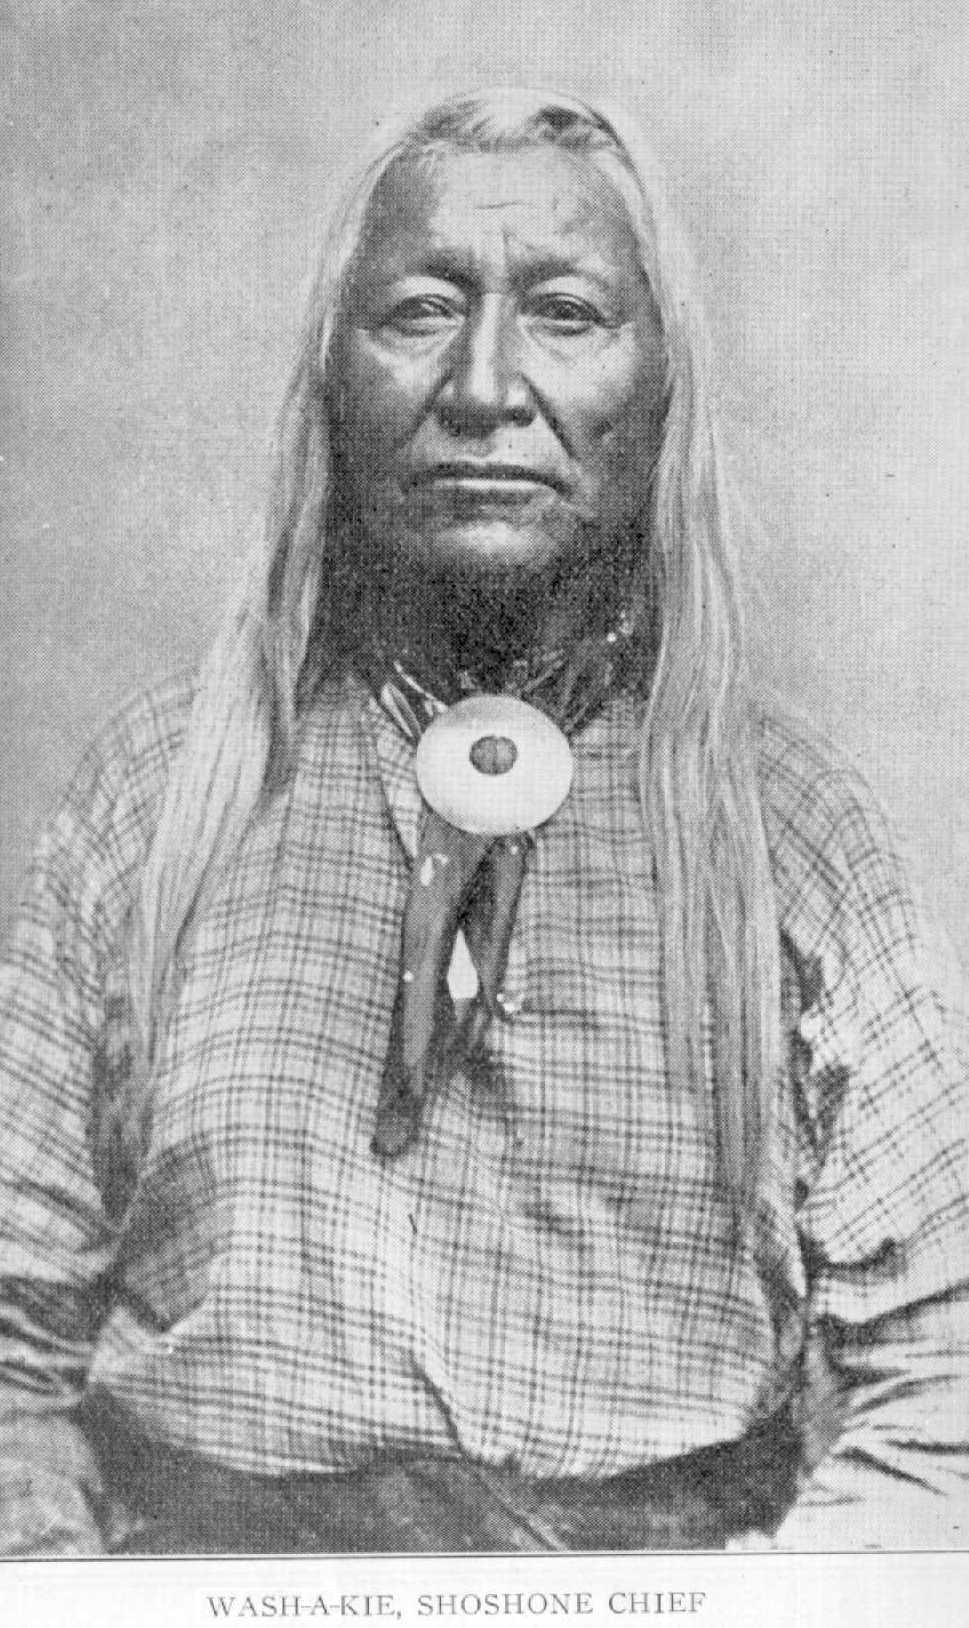 Chief Wash-a-kie, Shoshone Chief